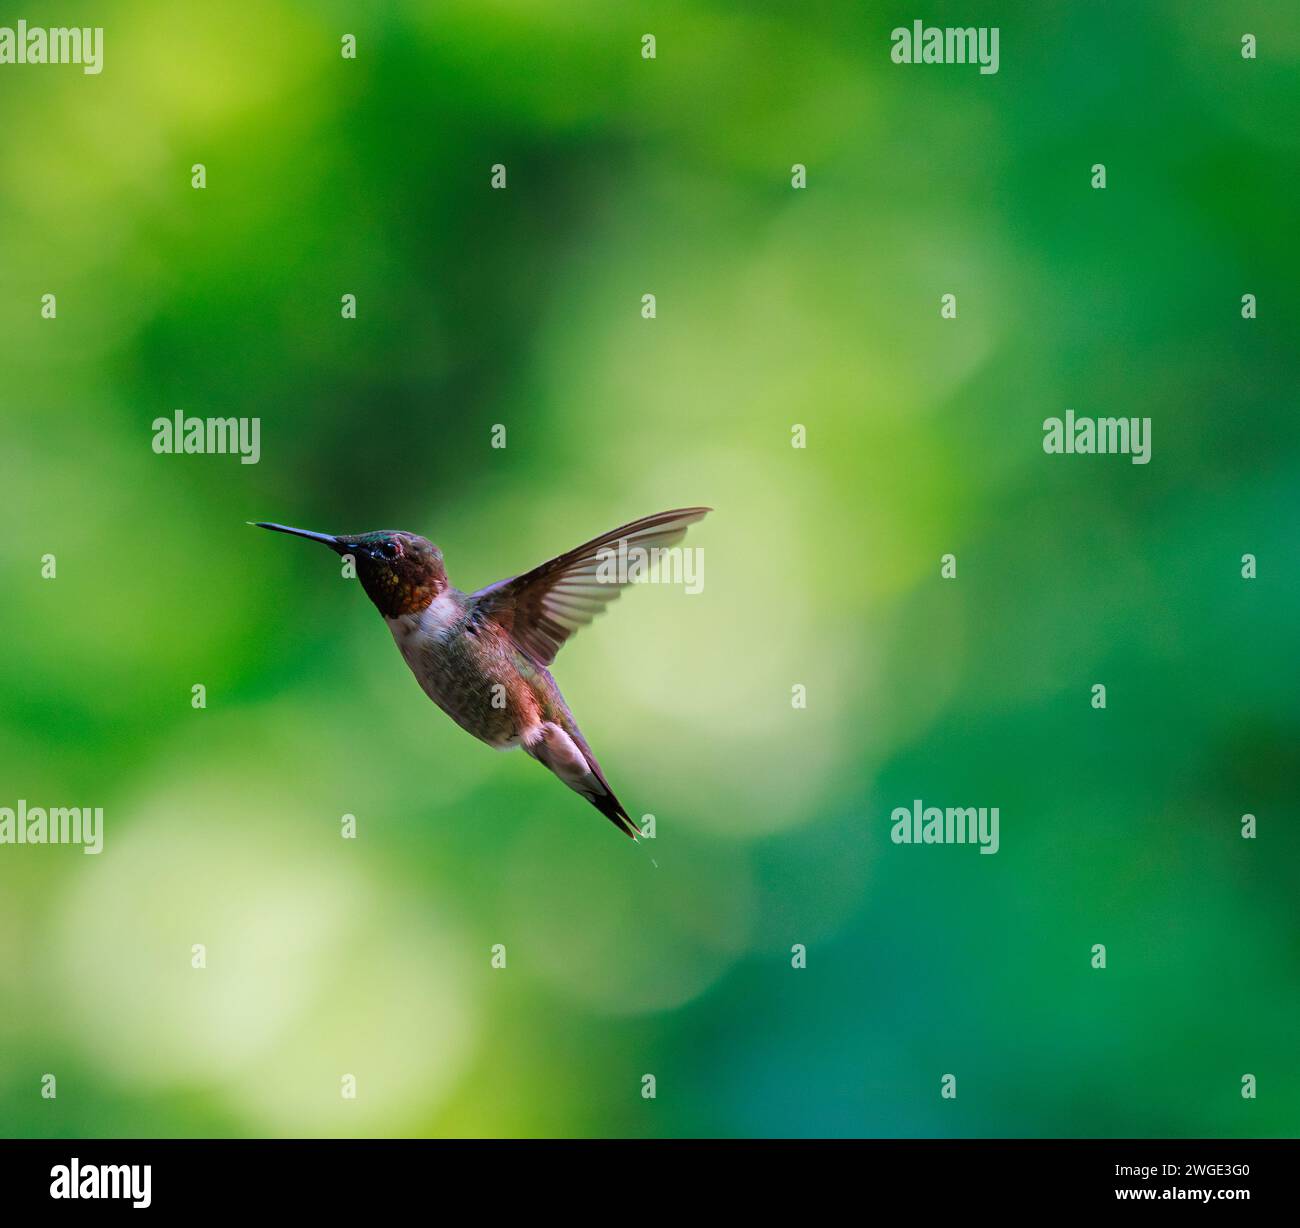 Rubis a jeté colibri en vol avec fond de verdure Banque D'Images